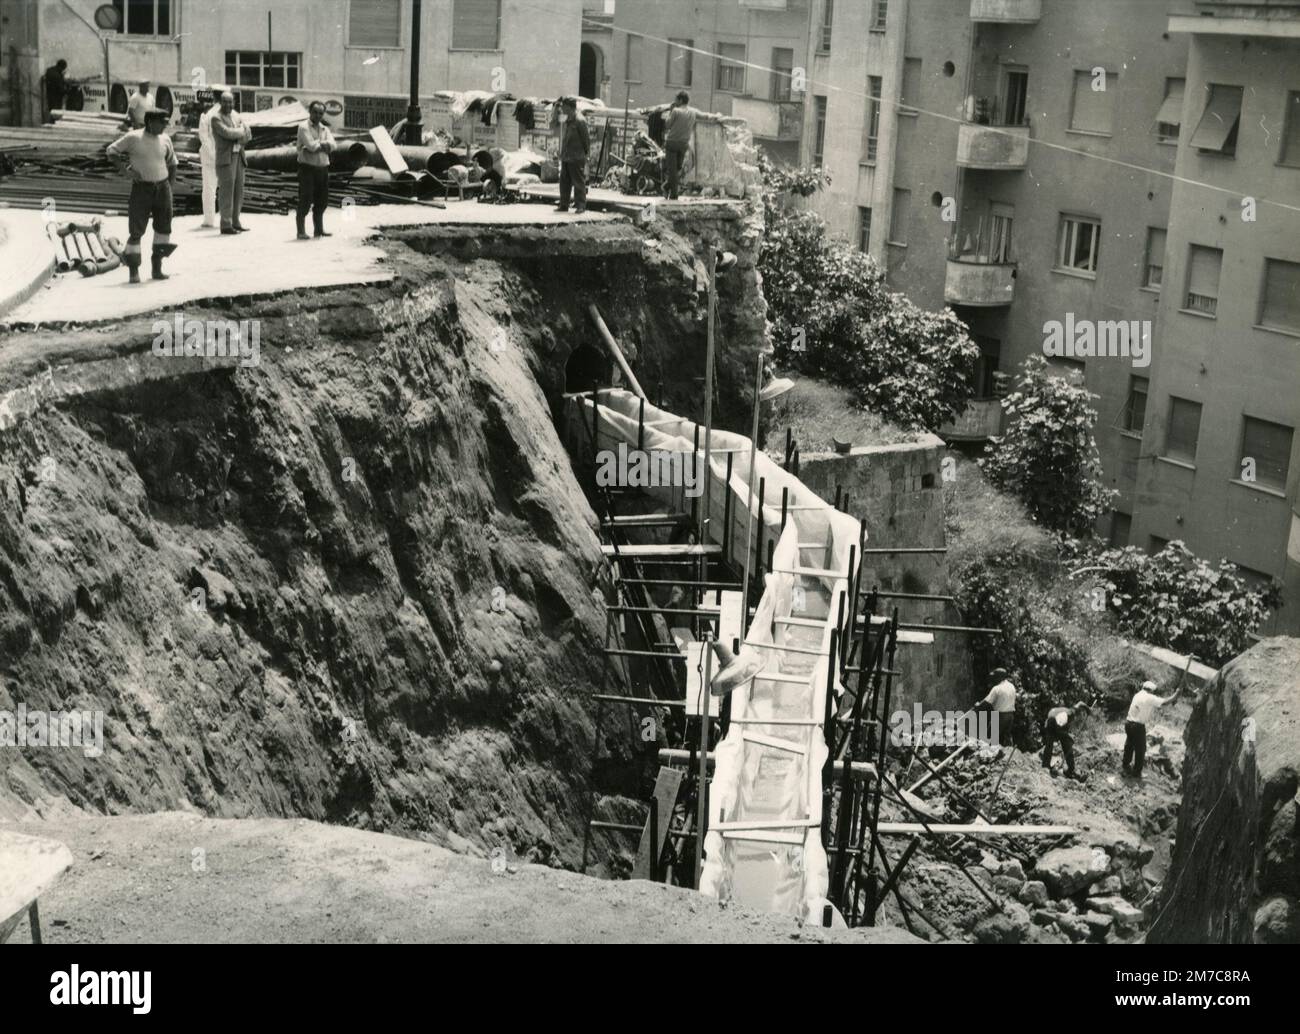 Via Tasso après l'effondrement de la route, Naples, Italie 1967 Banque D'Images